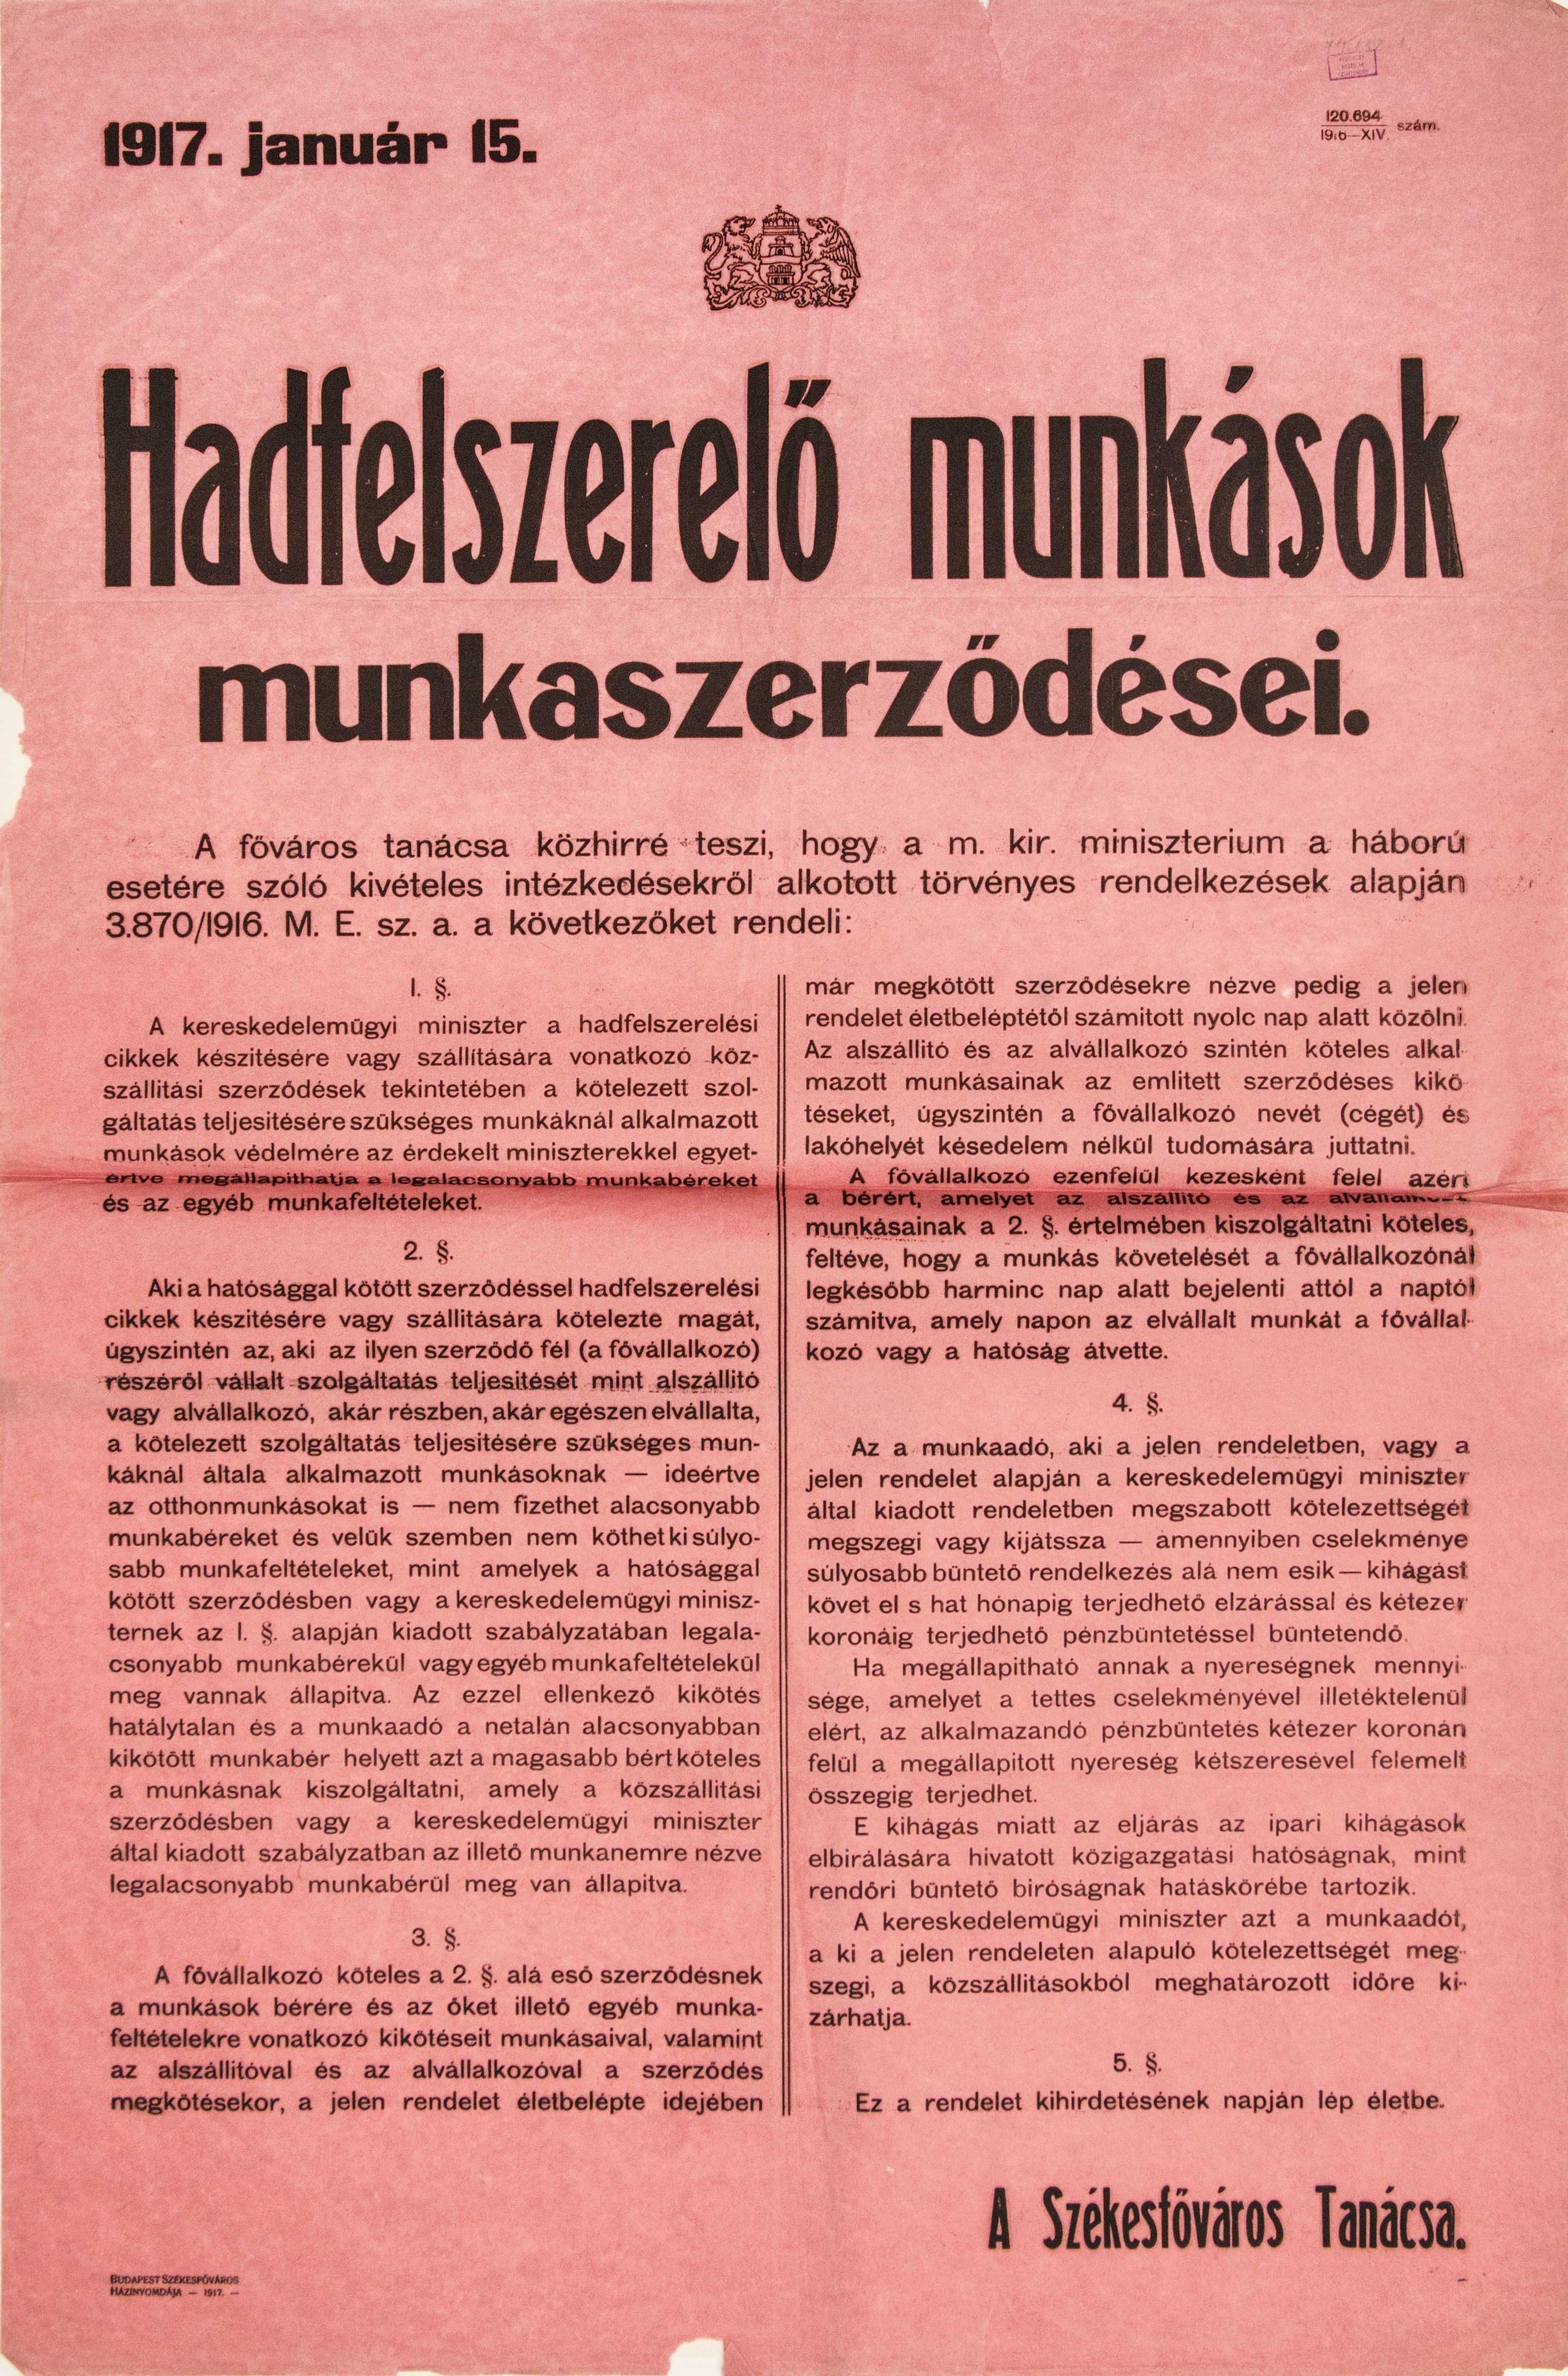 Hadfelszerelő munkások munkaszerződéseivel kapcsolatos hirdetés, 1917.01.15. (Ferenczy Múzeumi Centrum CC BY-NC-SA)